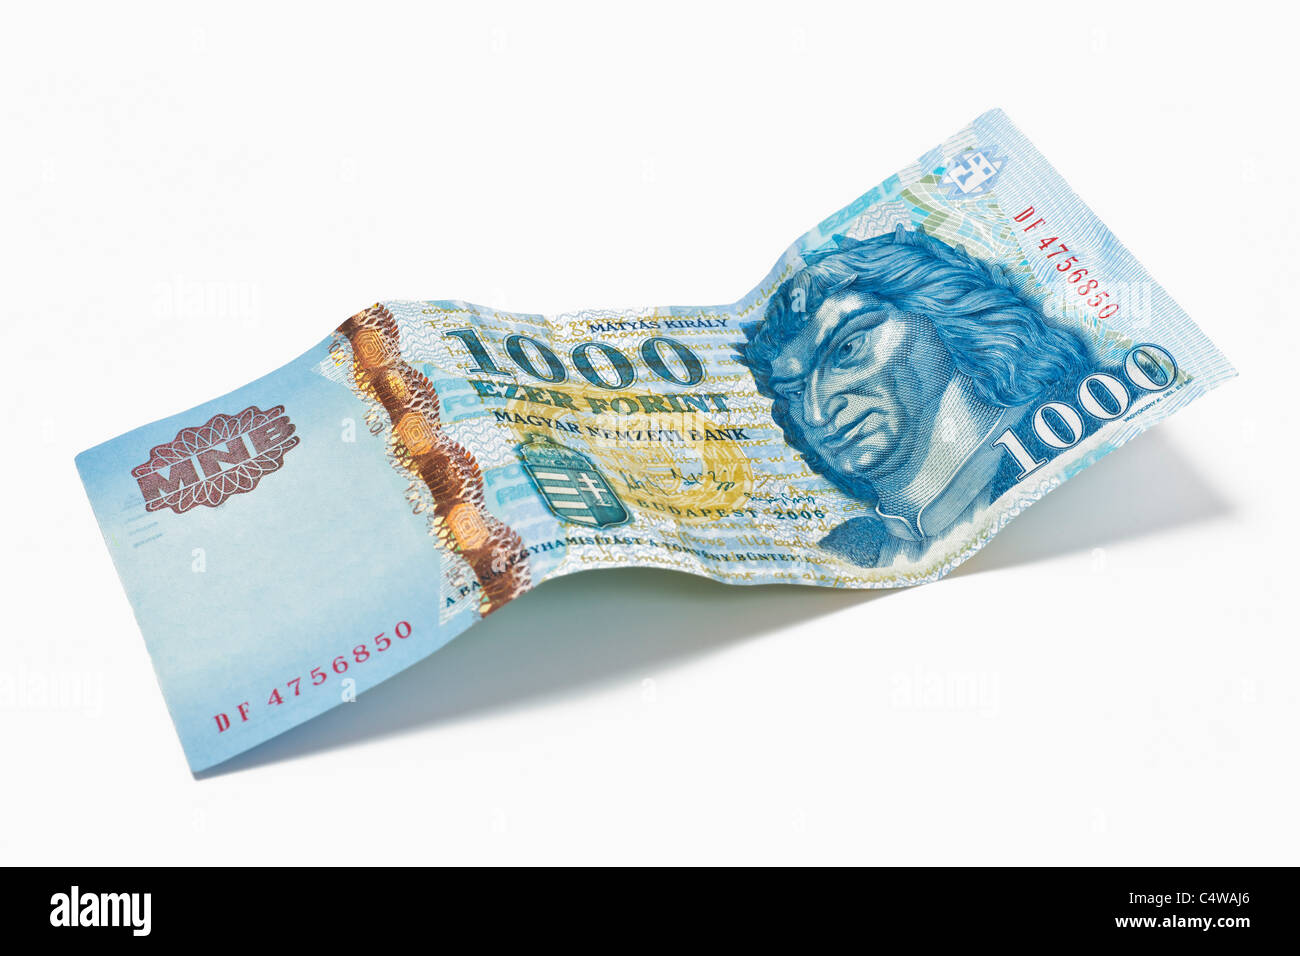 Von Detailansicht ungarischen Forint 1000 Billet de banque | photo détail d'un billet de 1 000 forint hongrois Banque D'Images